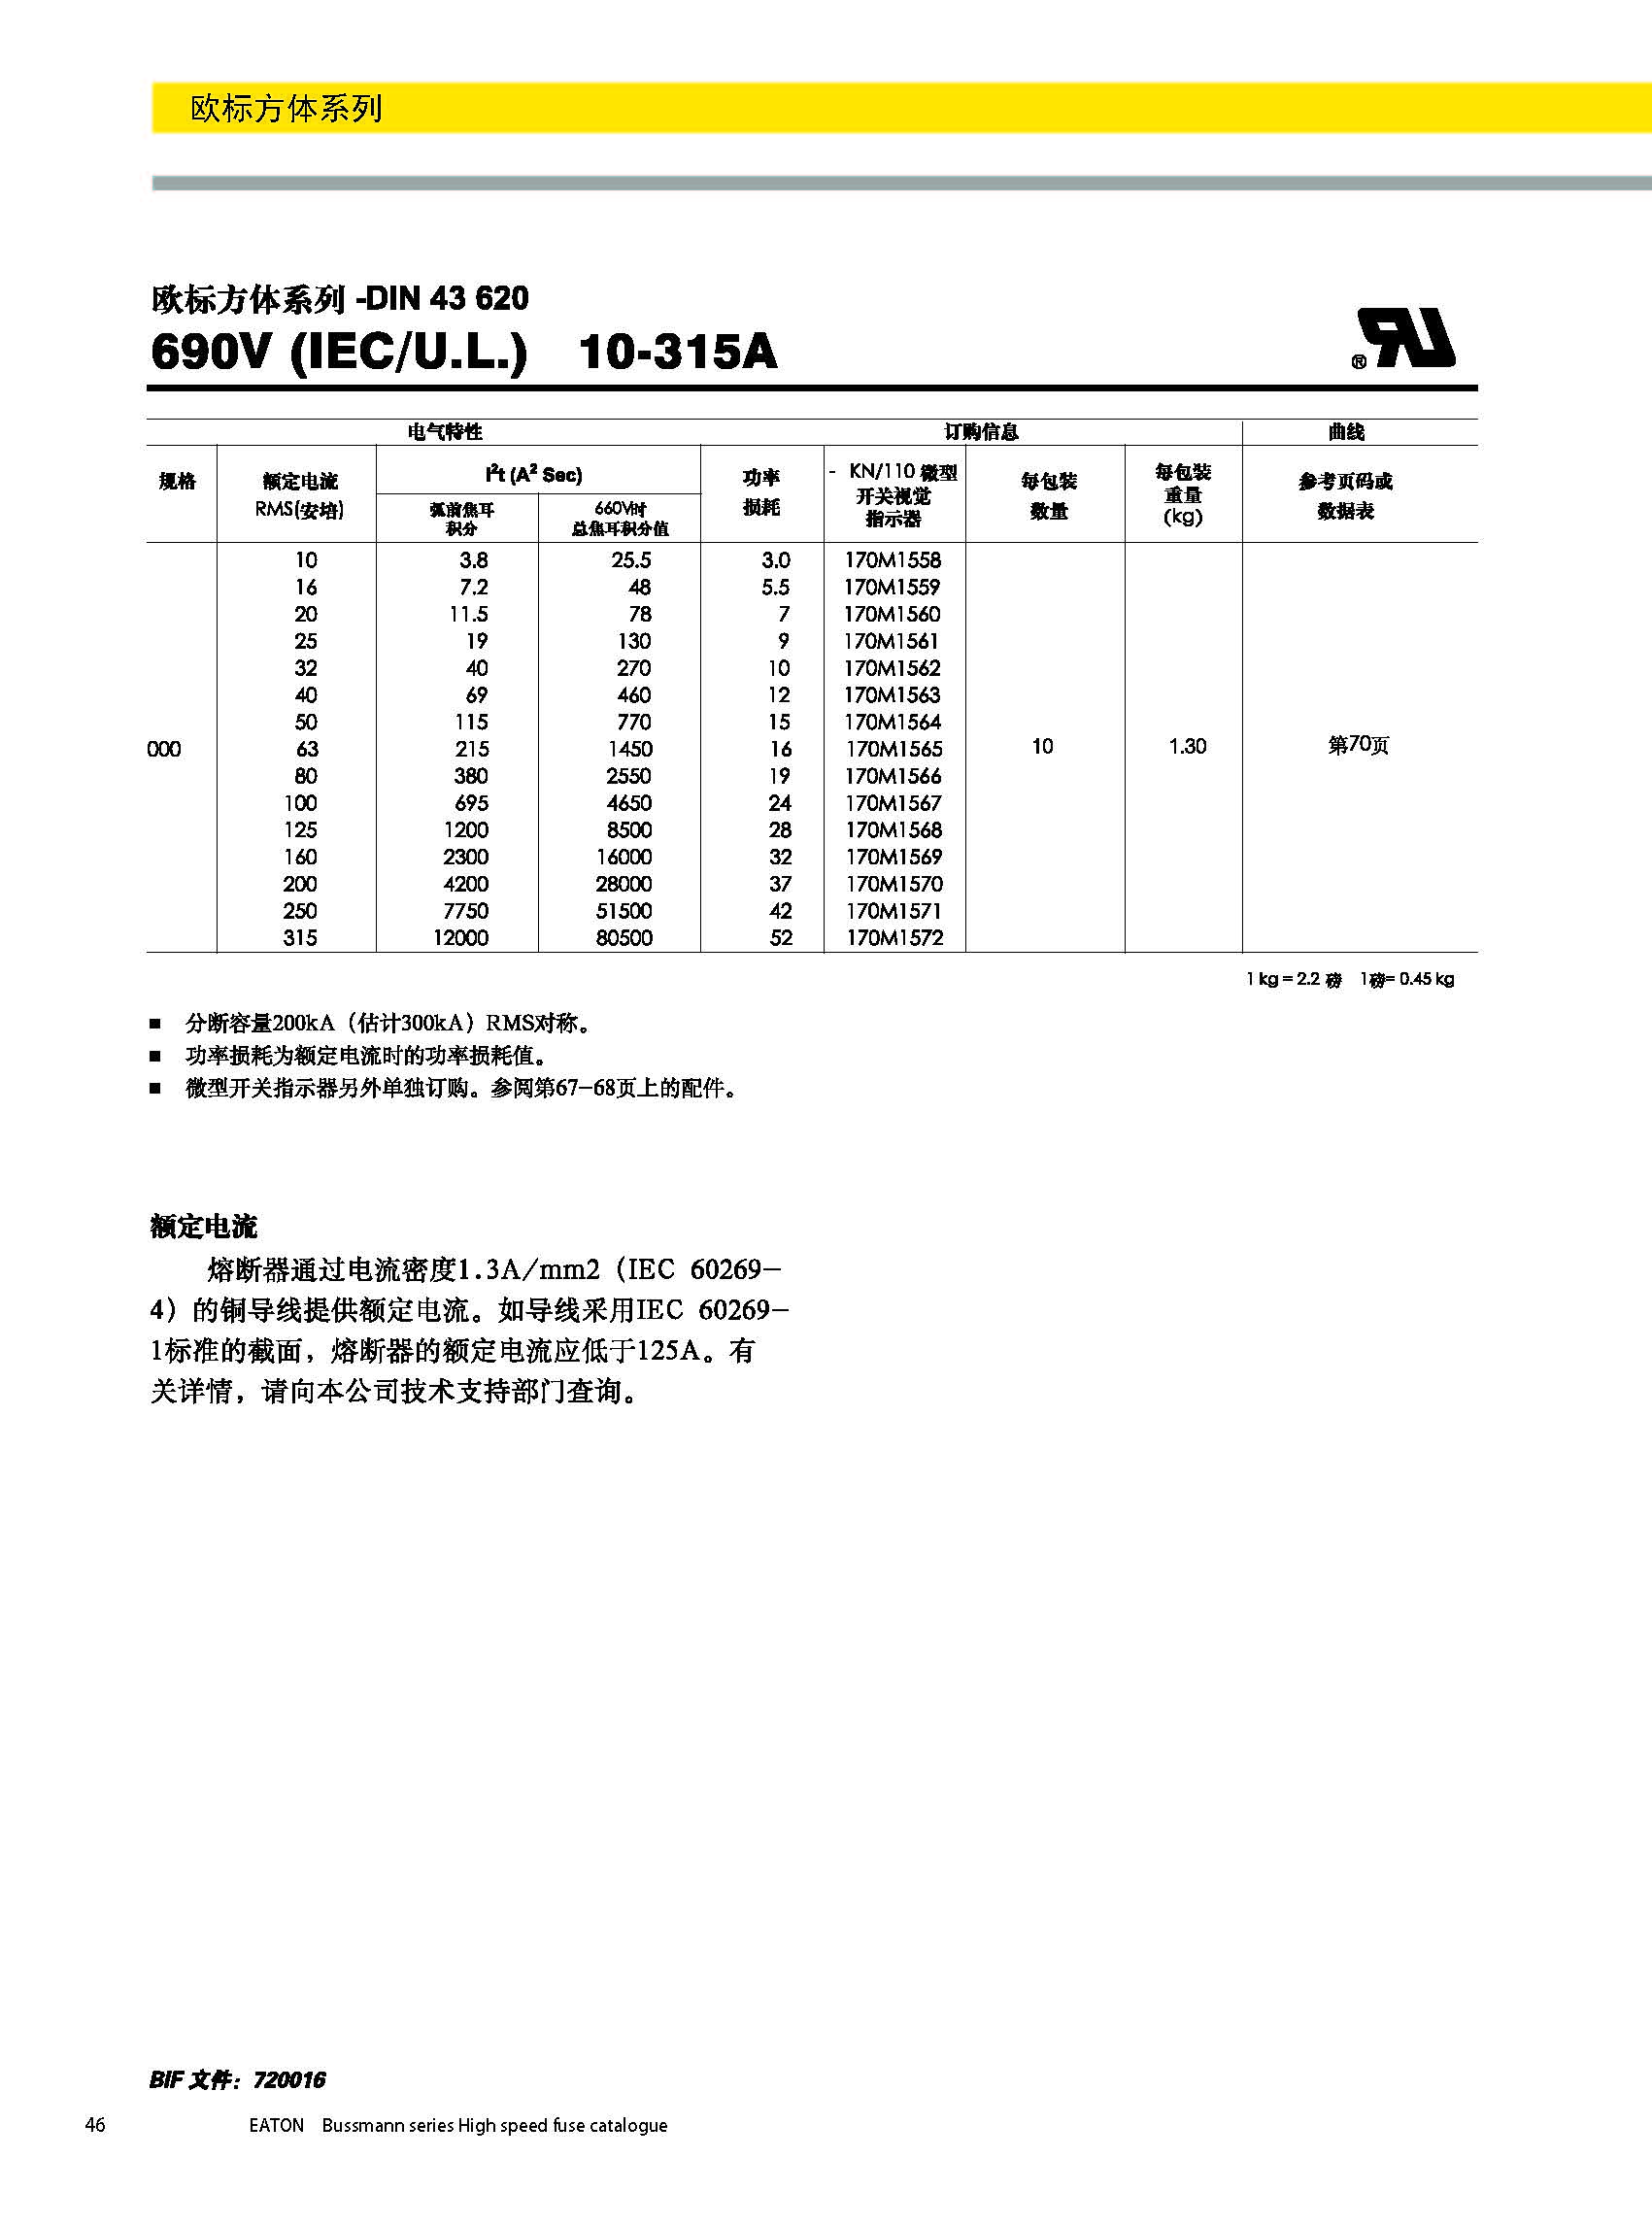 欧标方体系列熔断器DIN43620型号